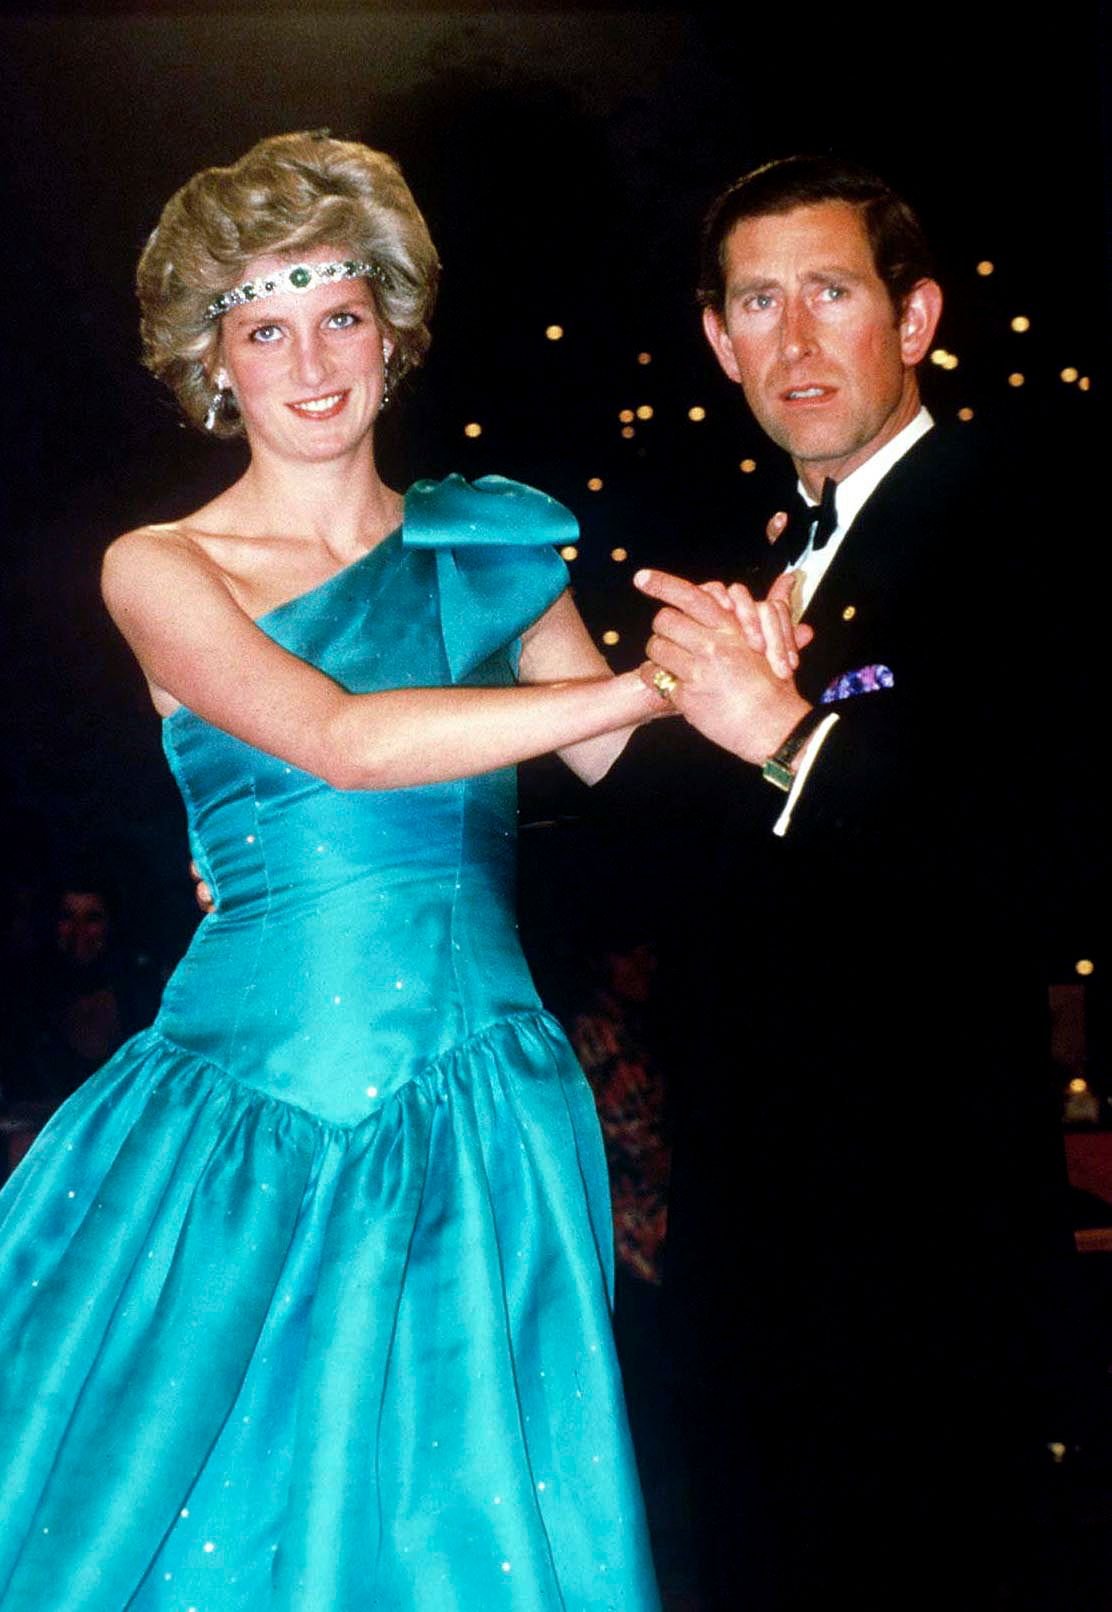  Le Prince Charles danse avec sa femme, la princesse Diana, à Melbourne, lors de leur tournée officielle en Australie.  | Photo : Getty Images